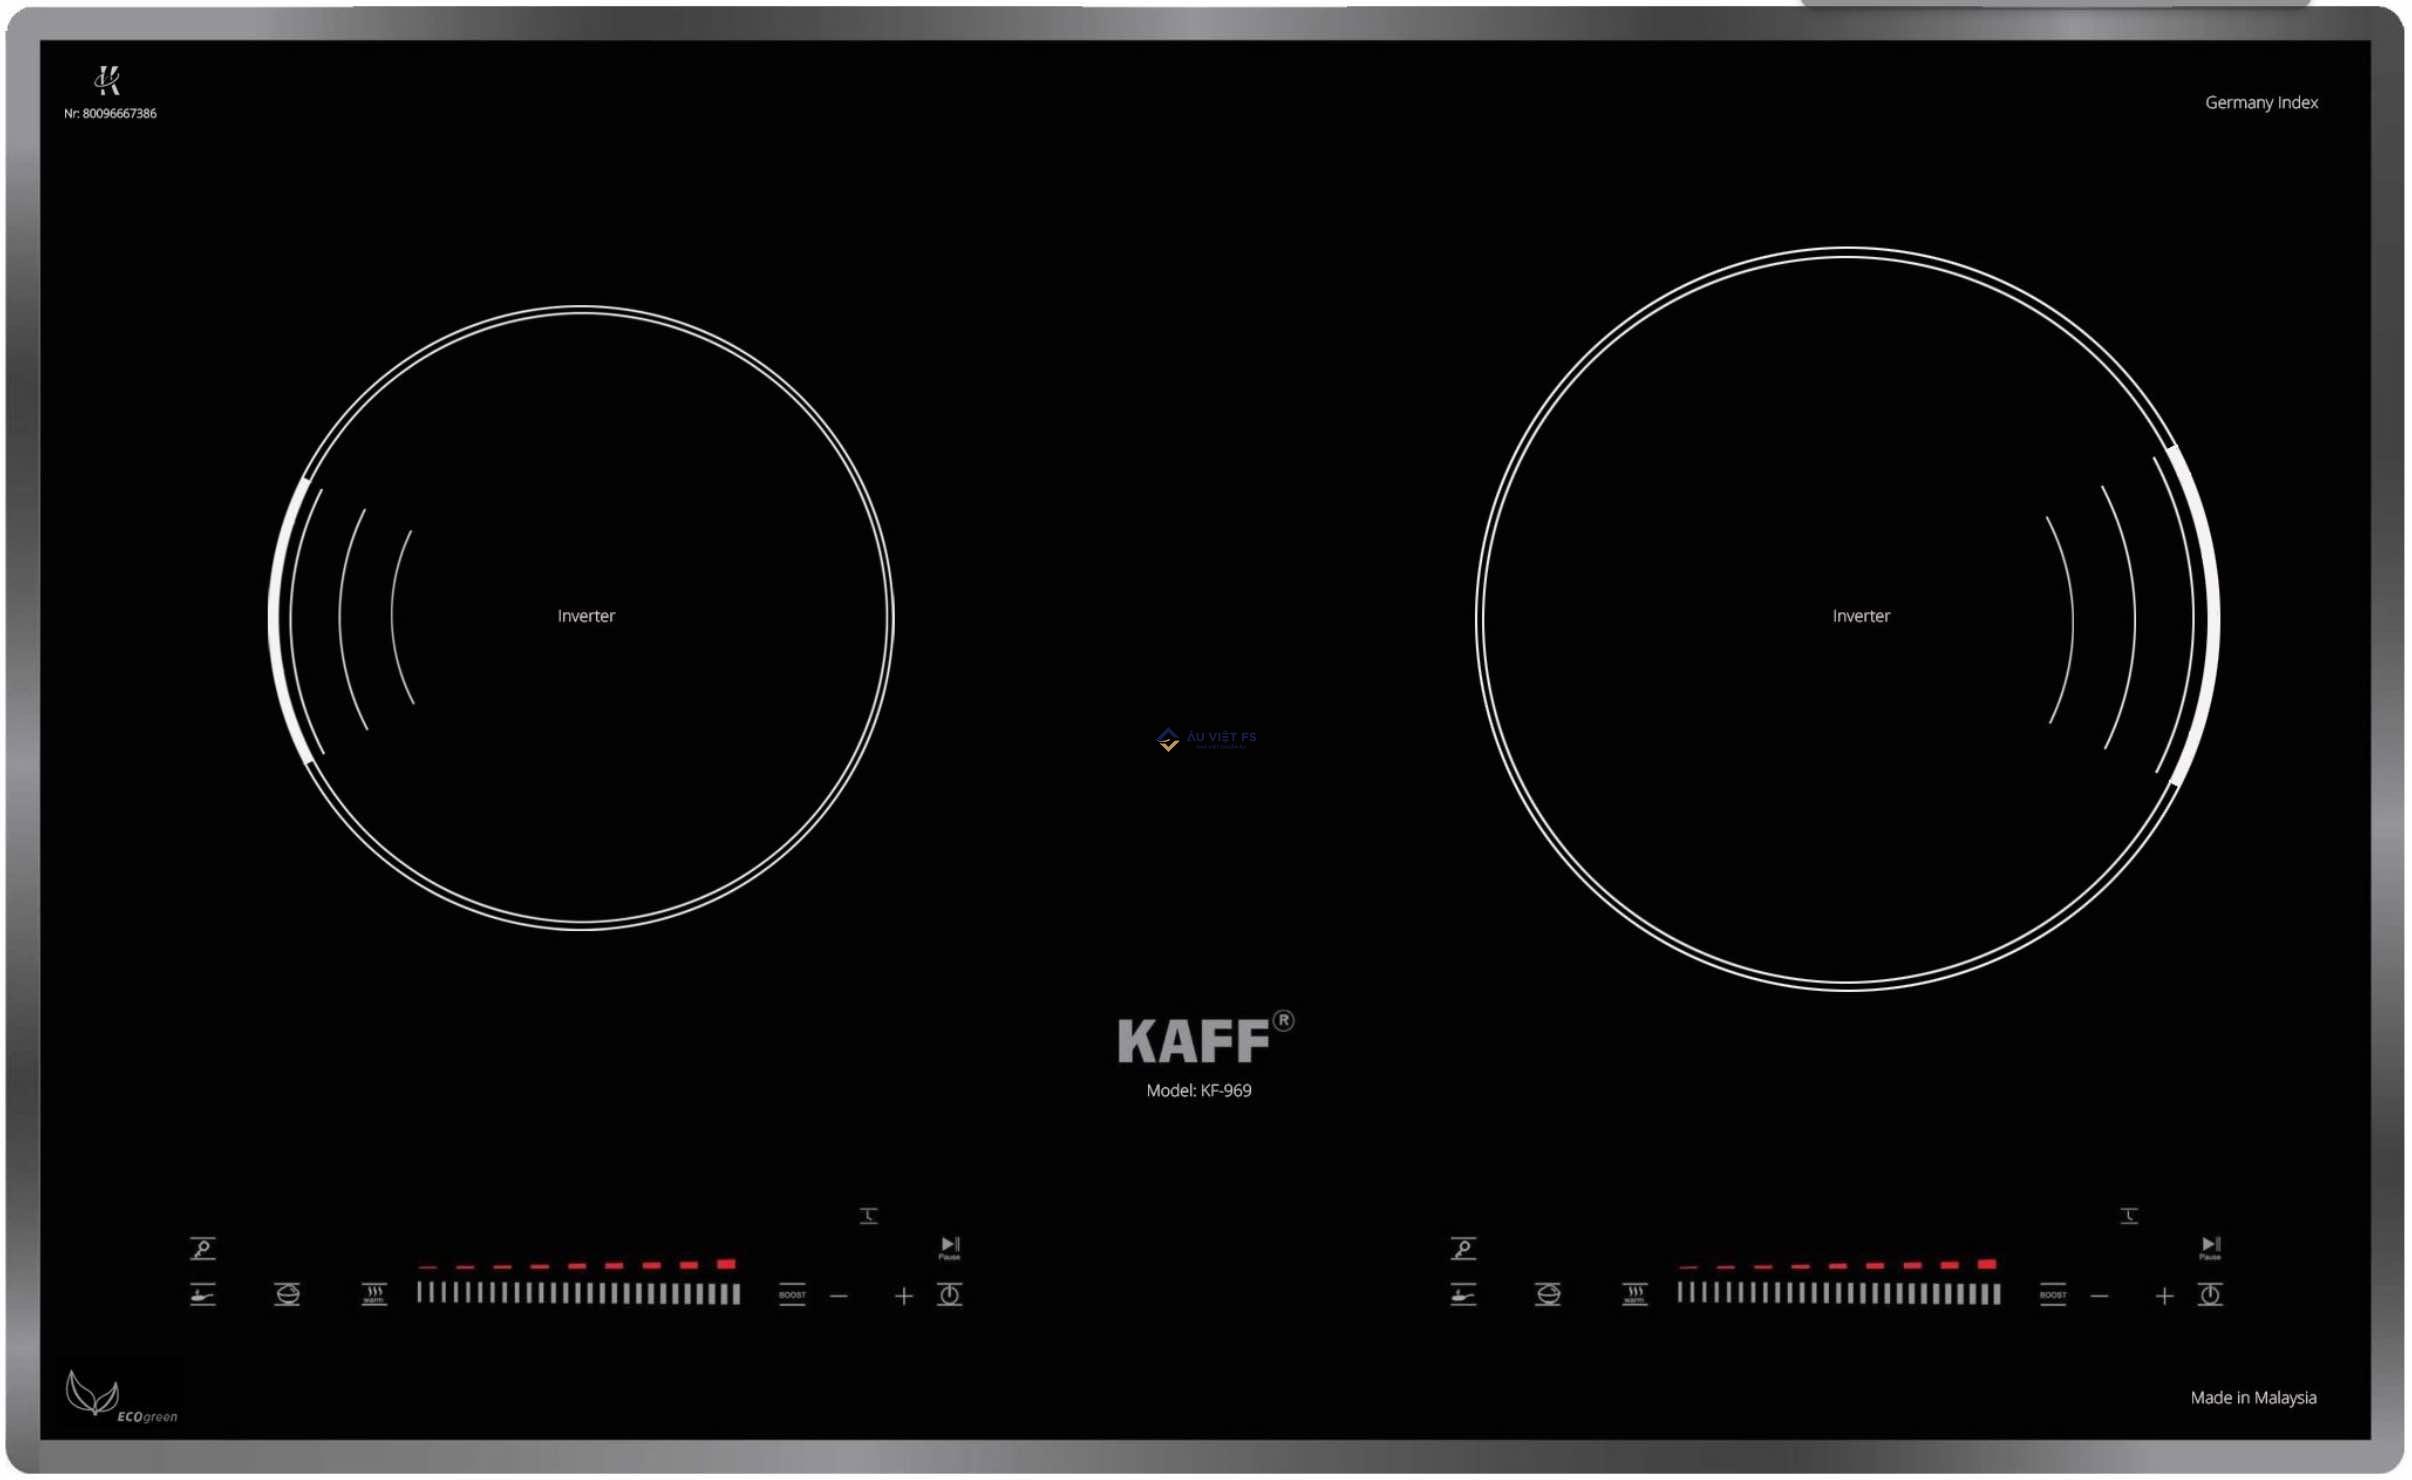 Đánh giá bếp Kaff KF-969, Kaff 969, bếp từ Kaff 969, bếp từ đôi Kaff, Bếp Kaff, Bếp từ 969